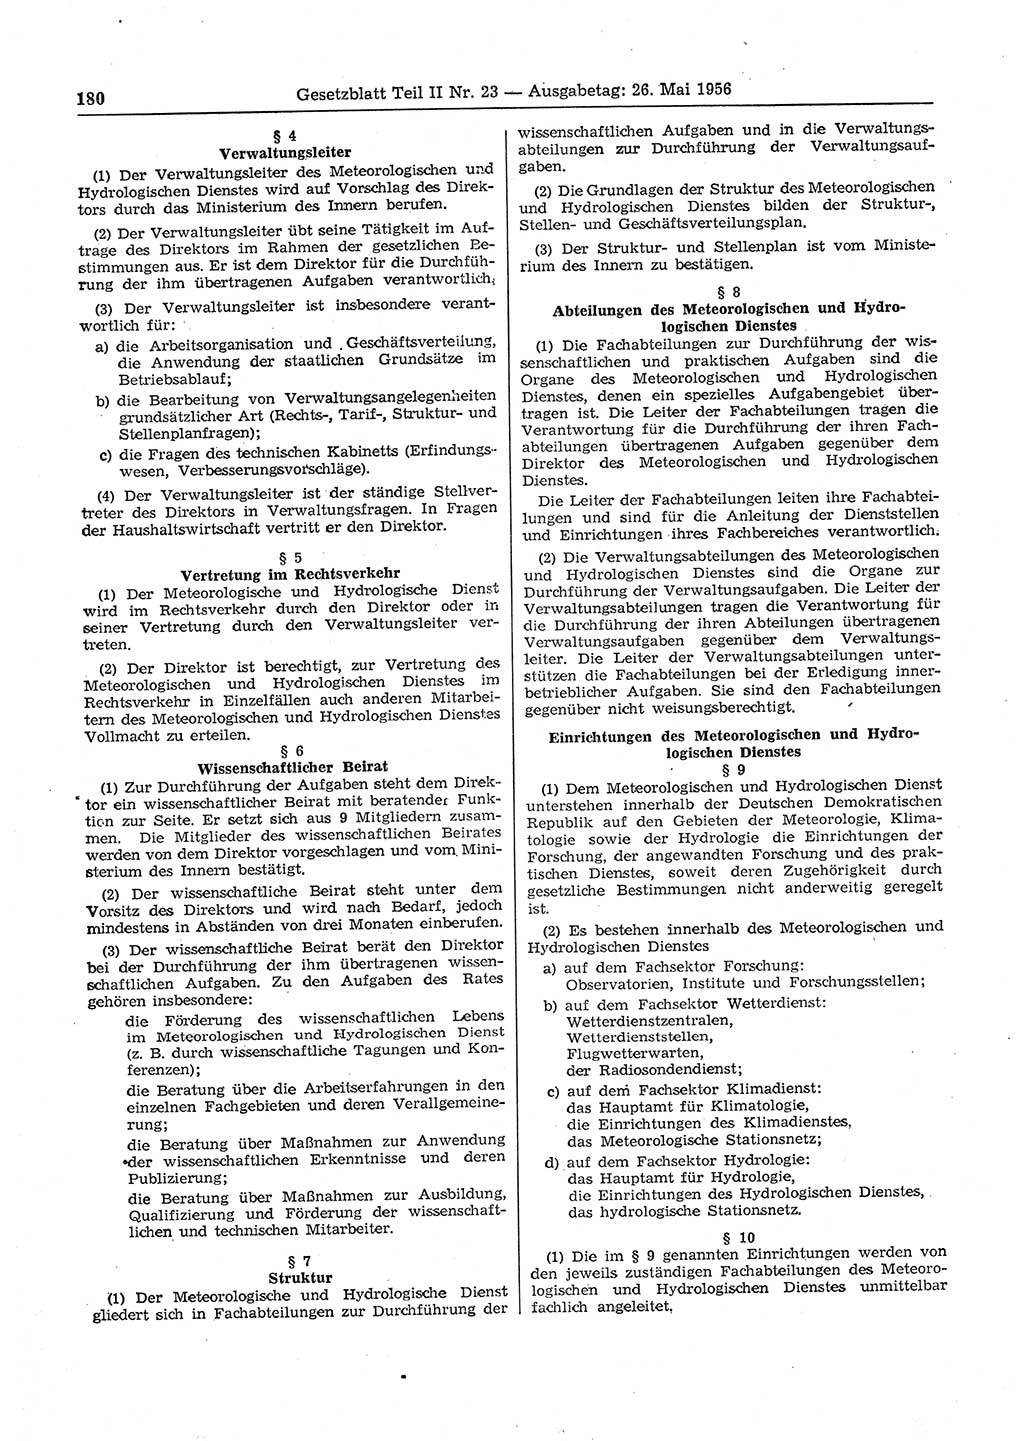 Gesetzblatt (GBl.) der Deutschen Demokratischen Republik (DDR) Teil ⅠⅠ 1956, Seite 180 (GBl. DDR ⅠⅠ 1956, S. 180)